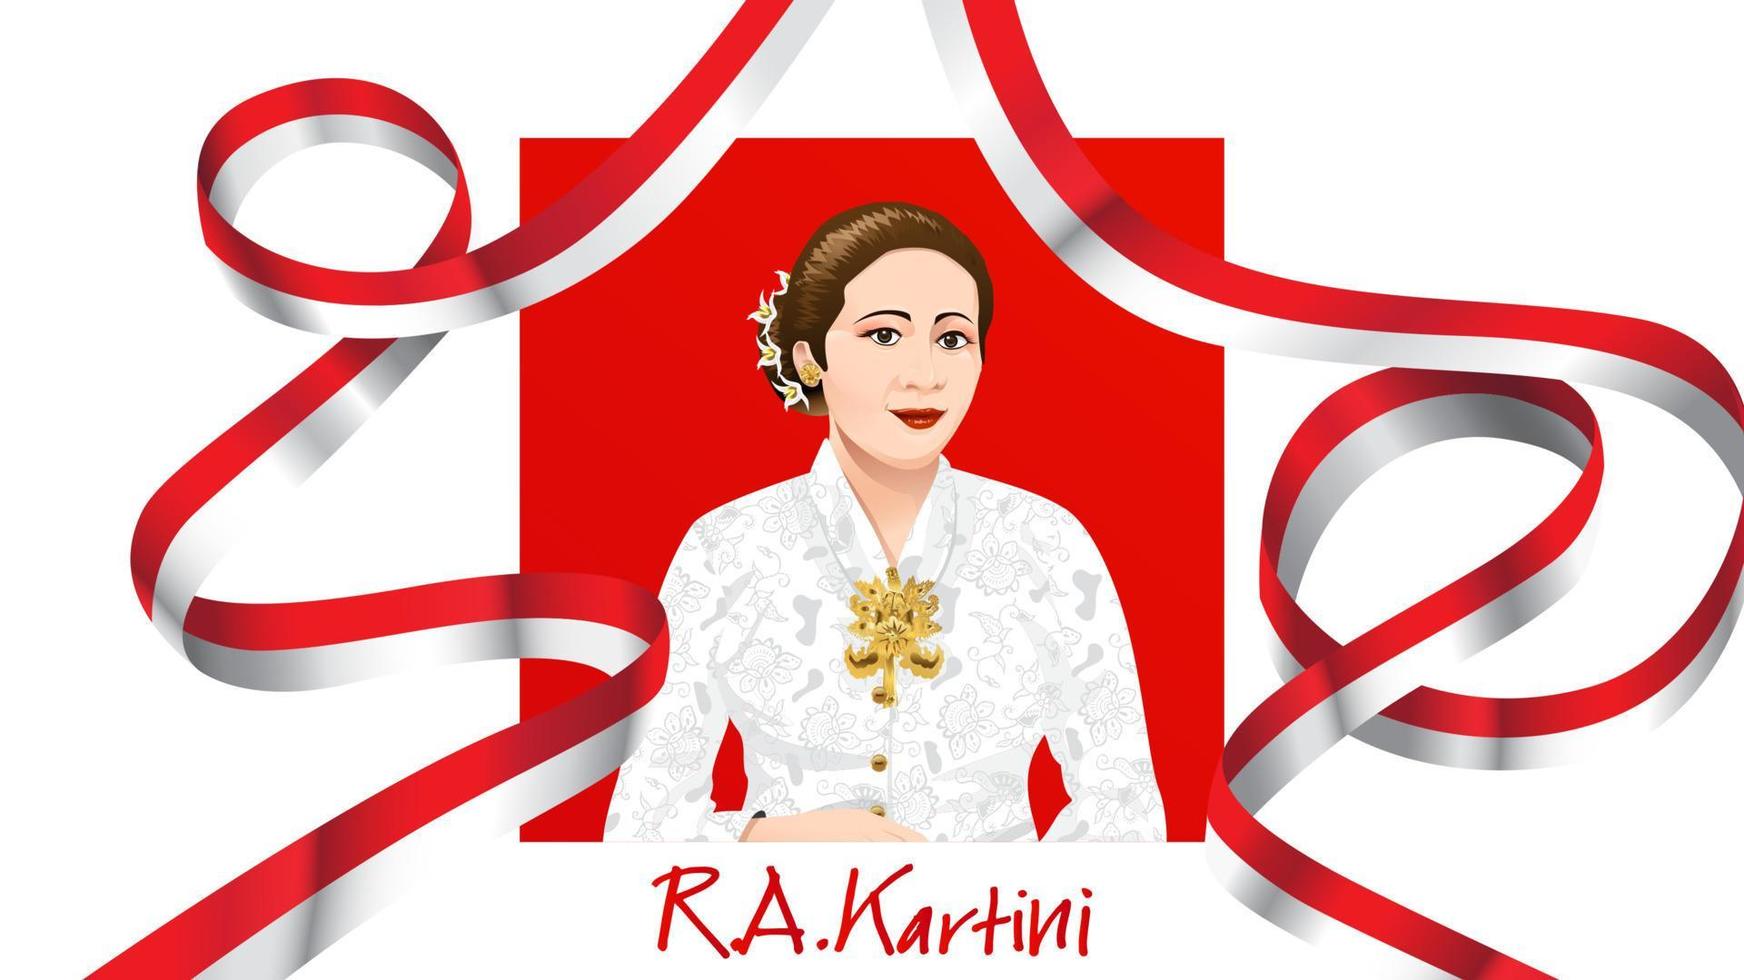 kartini day, ra kartini os heróis das mulheres e dos direitos humanos na indonésia. fundo de design de modelo de banner - vetor